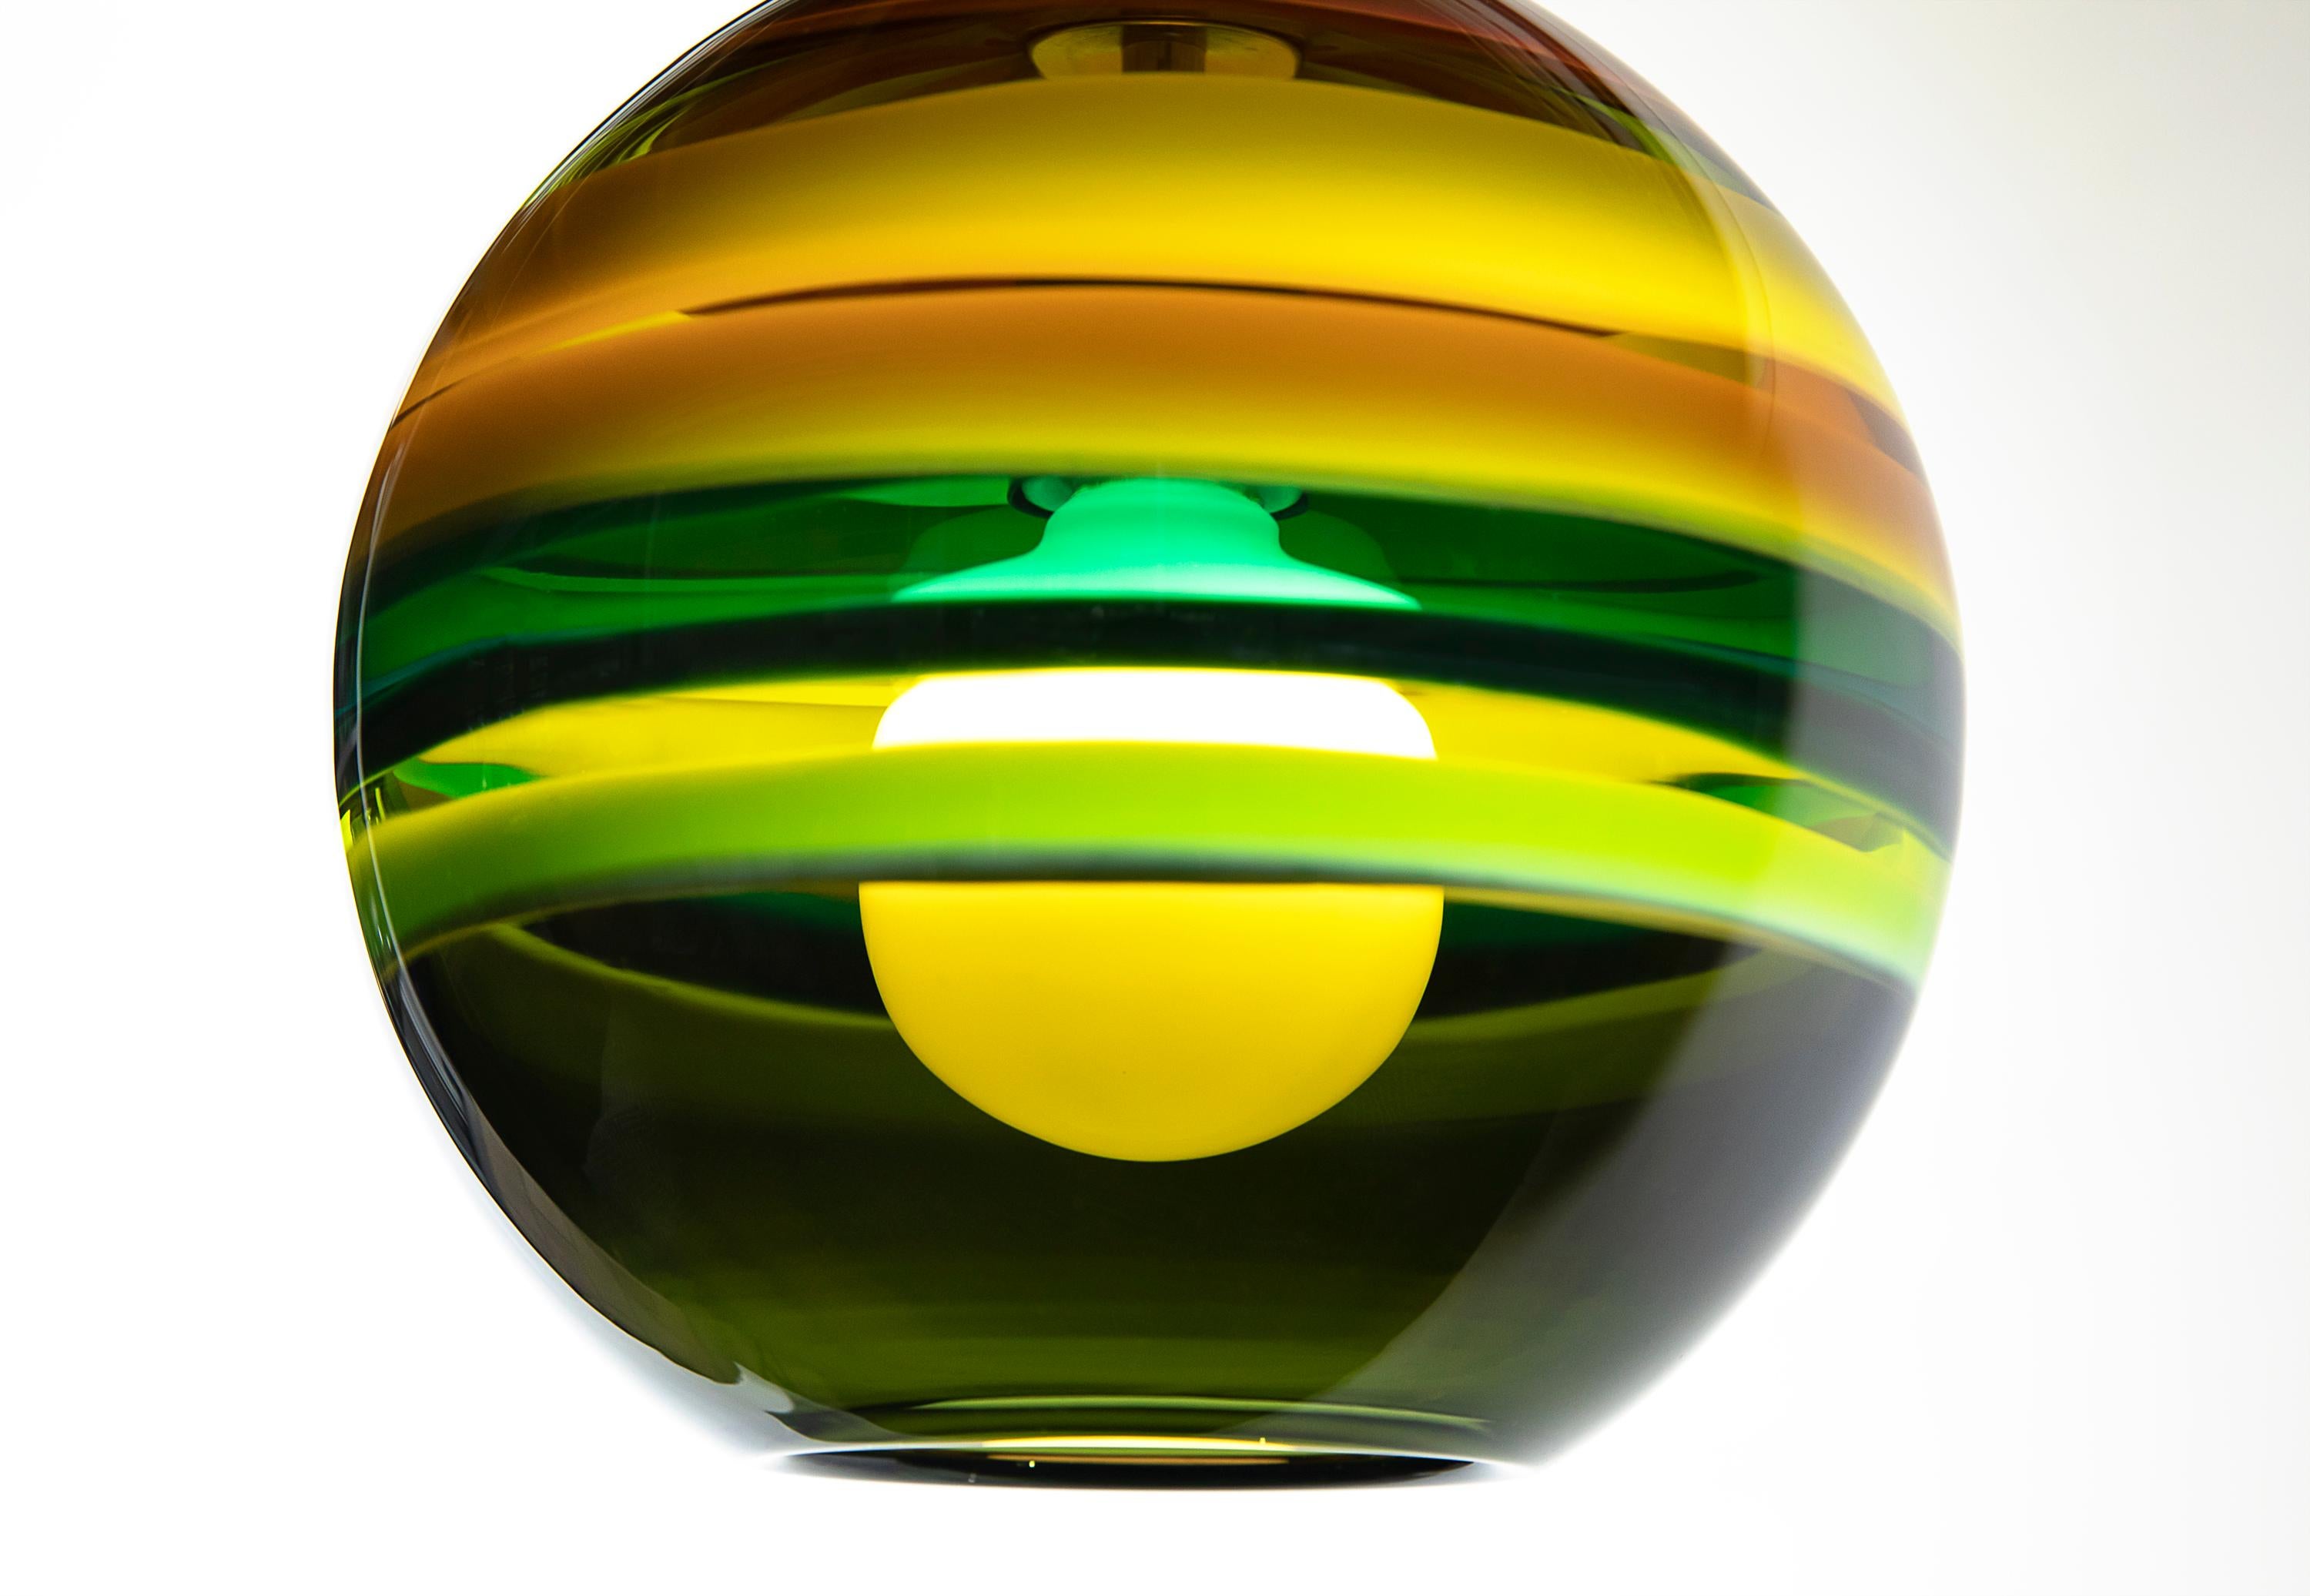 Grüne Pendelleuchte, moosbewachsene Kugel - • Handgeblasenes Glas, hergestellt auf Bestellung von Siemon & Salazar
Maße: 9